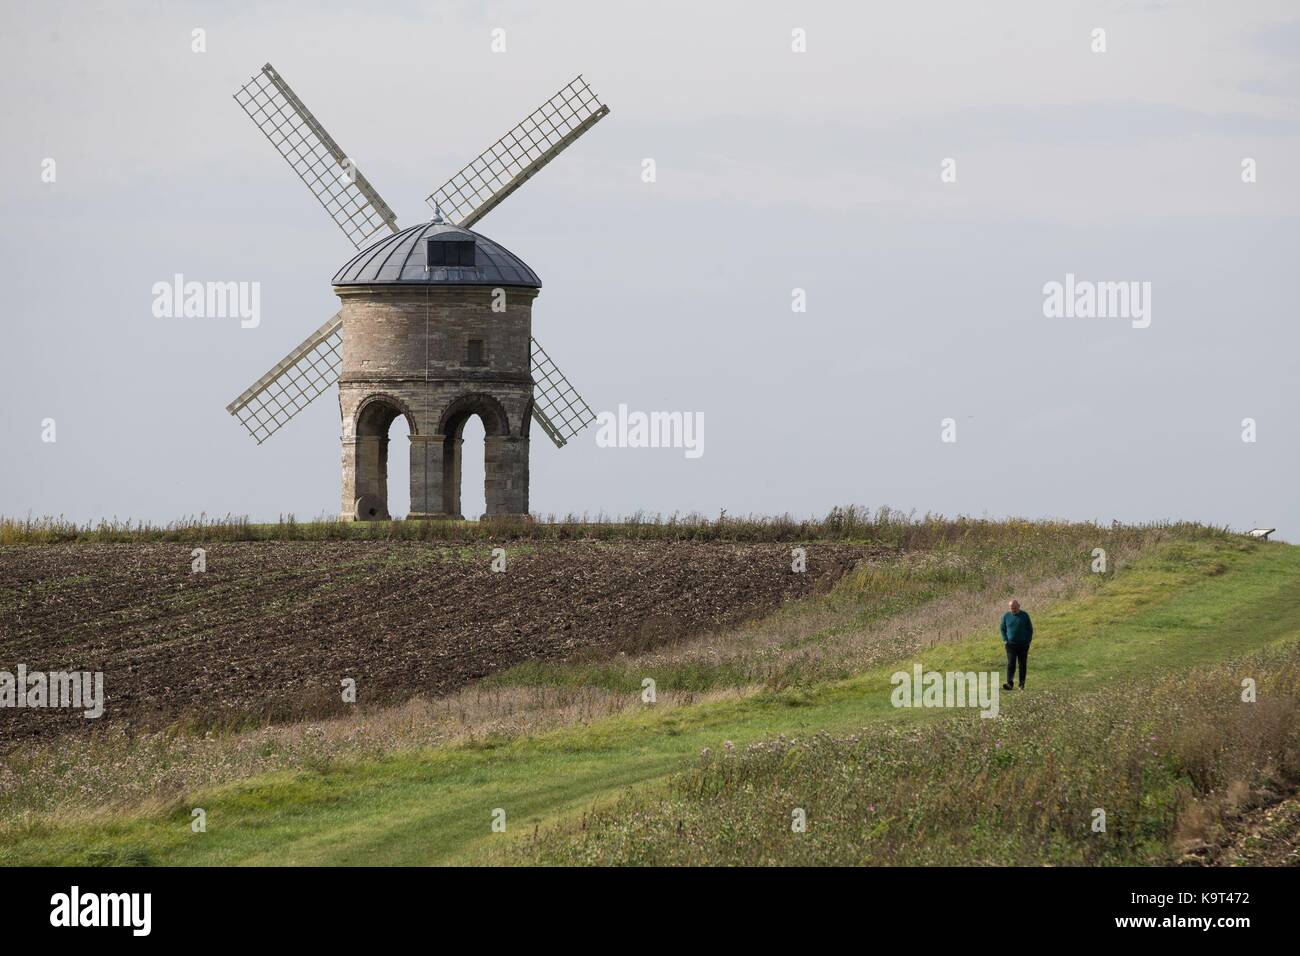 Ein Mann geht zurück von der Chesterton Windmühle, ein aus dem 17. Jahrhundert zylinderförmigen Turm Windmühle der Klasse 1 aufgeführt, außerhalb des Dorfes Chesterton, Warwickshire. Stockfoto